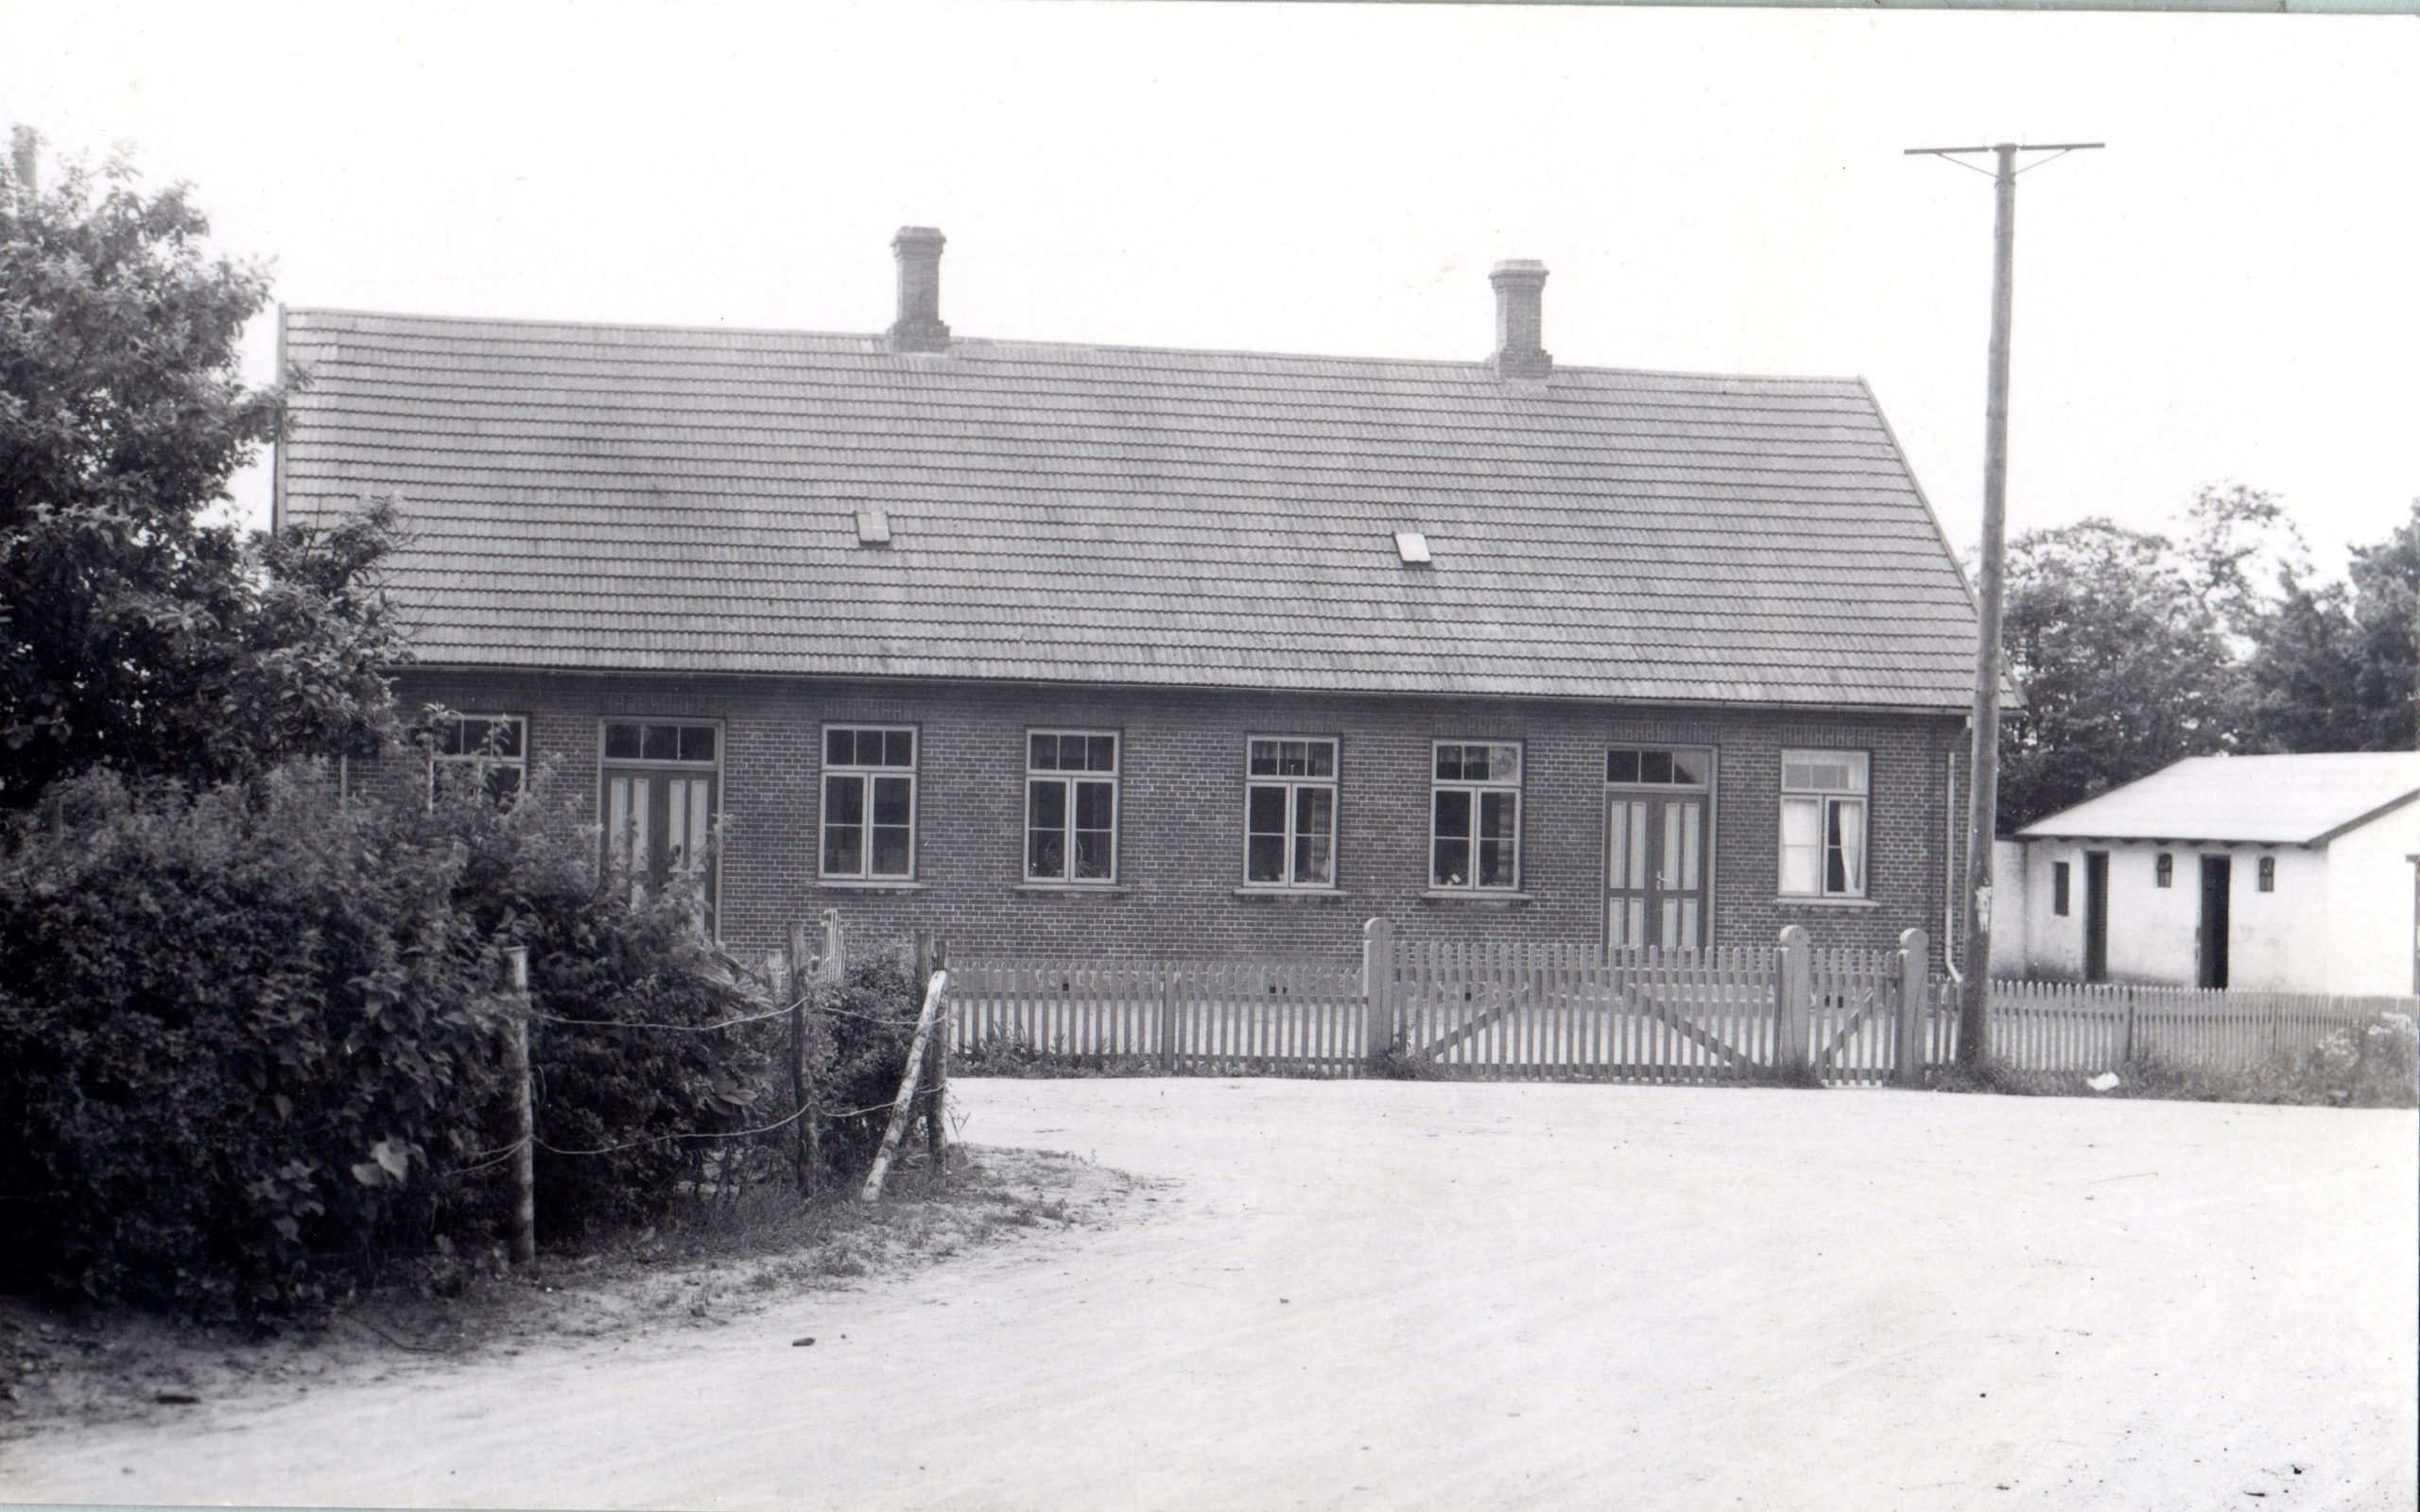 B00869:<br />
Vi ser den gamle skole i Geding Beliggende Geding Søvej 2. Skolen blev i 1955 overført til Centralskolen i Tilst.<br />
Billedet er fra Omk. 1925.<br />
Fotograf: Ukendt<br />
